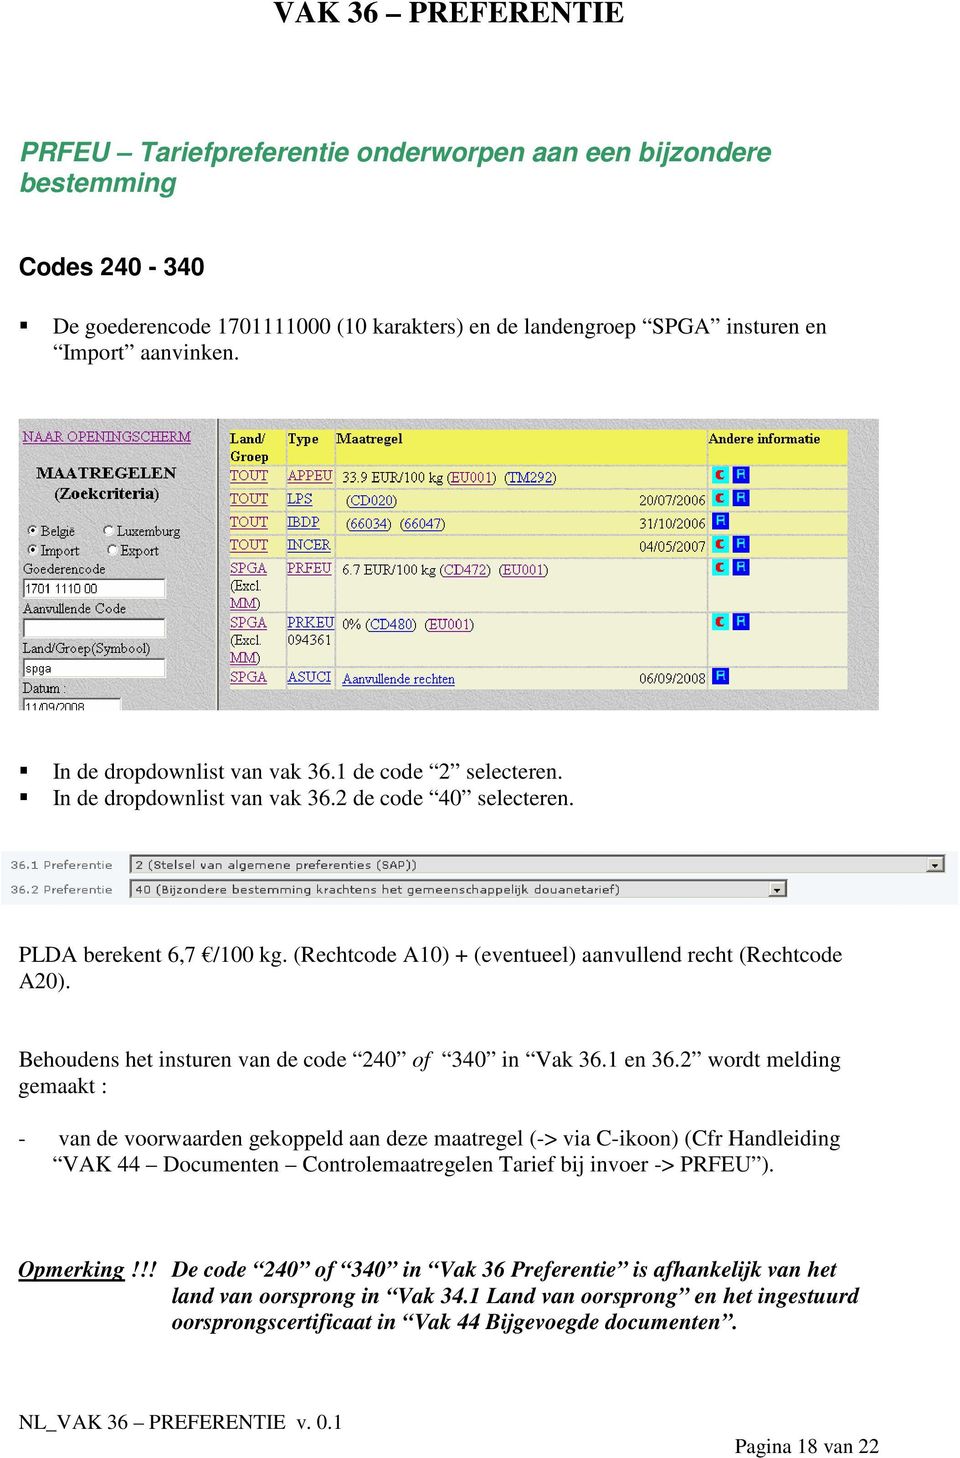 Behoudens het insturen van de code 240 of 340 in Vak 36.1 en 36.